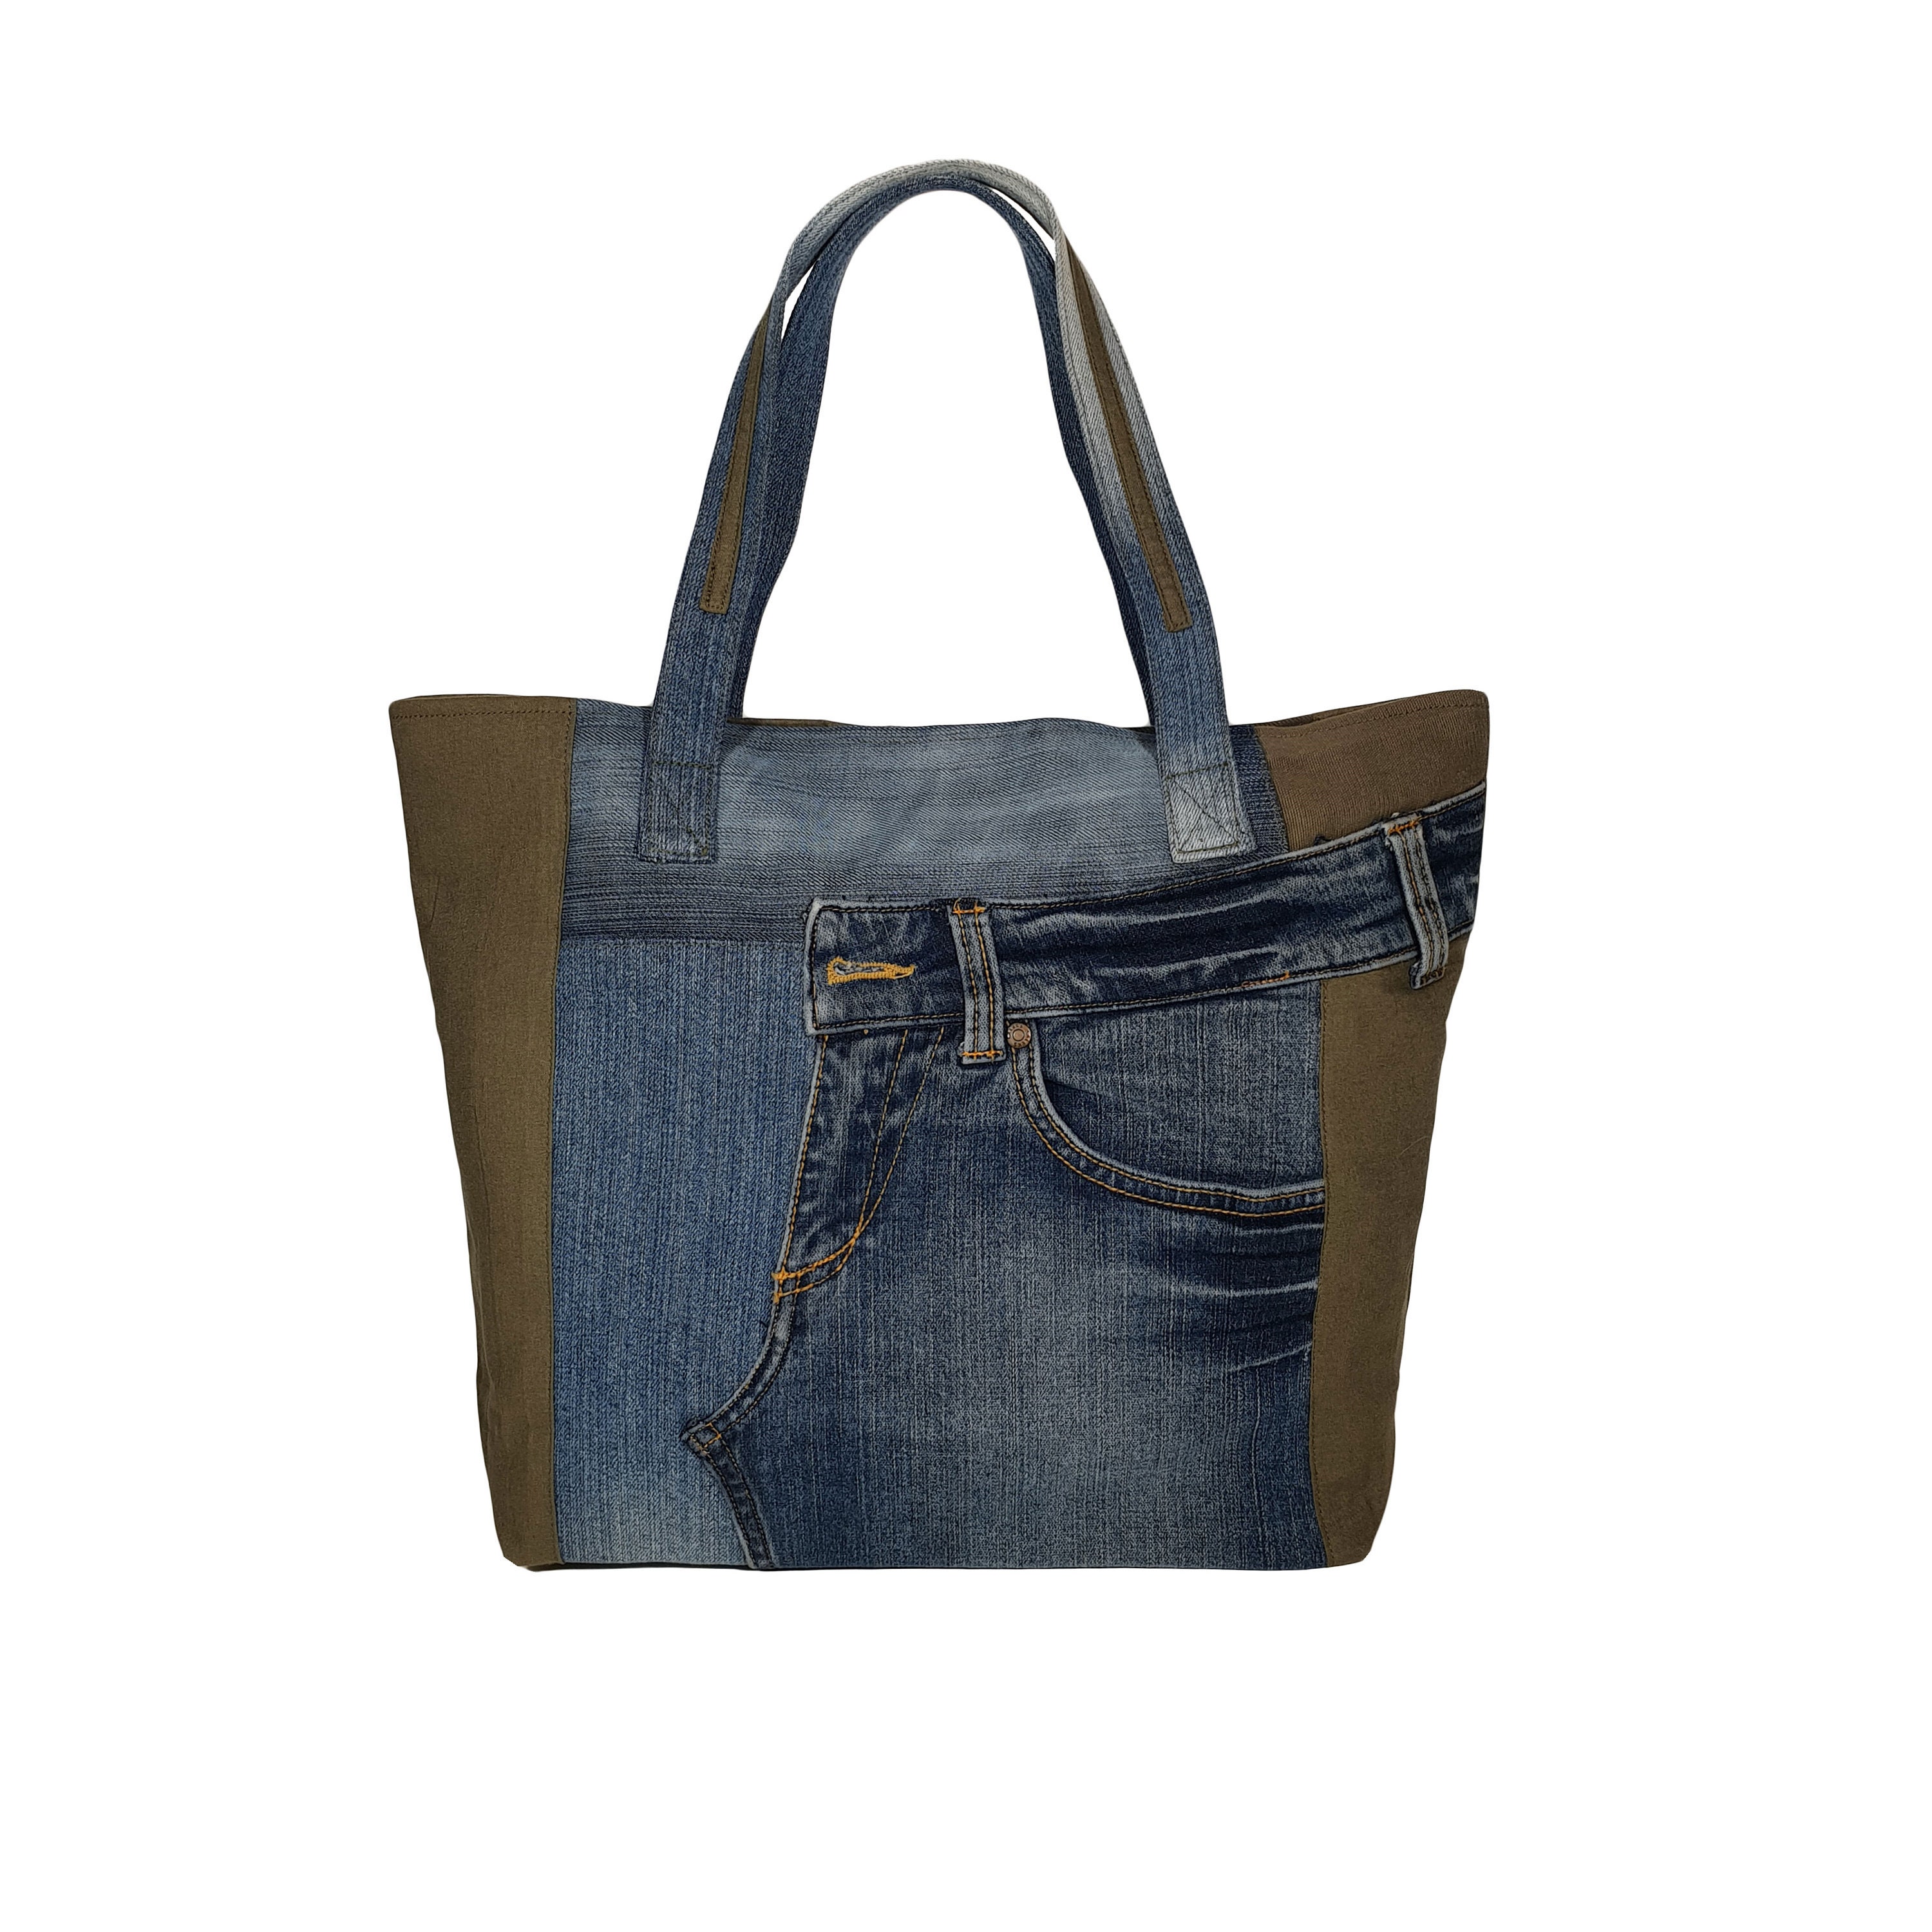 Denim Shoulder Totes Women Handbags Jeans Bags Casual Large